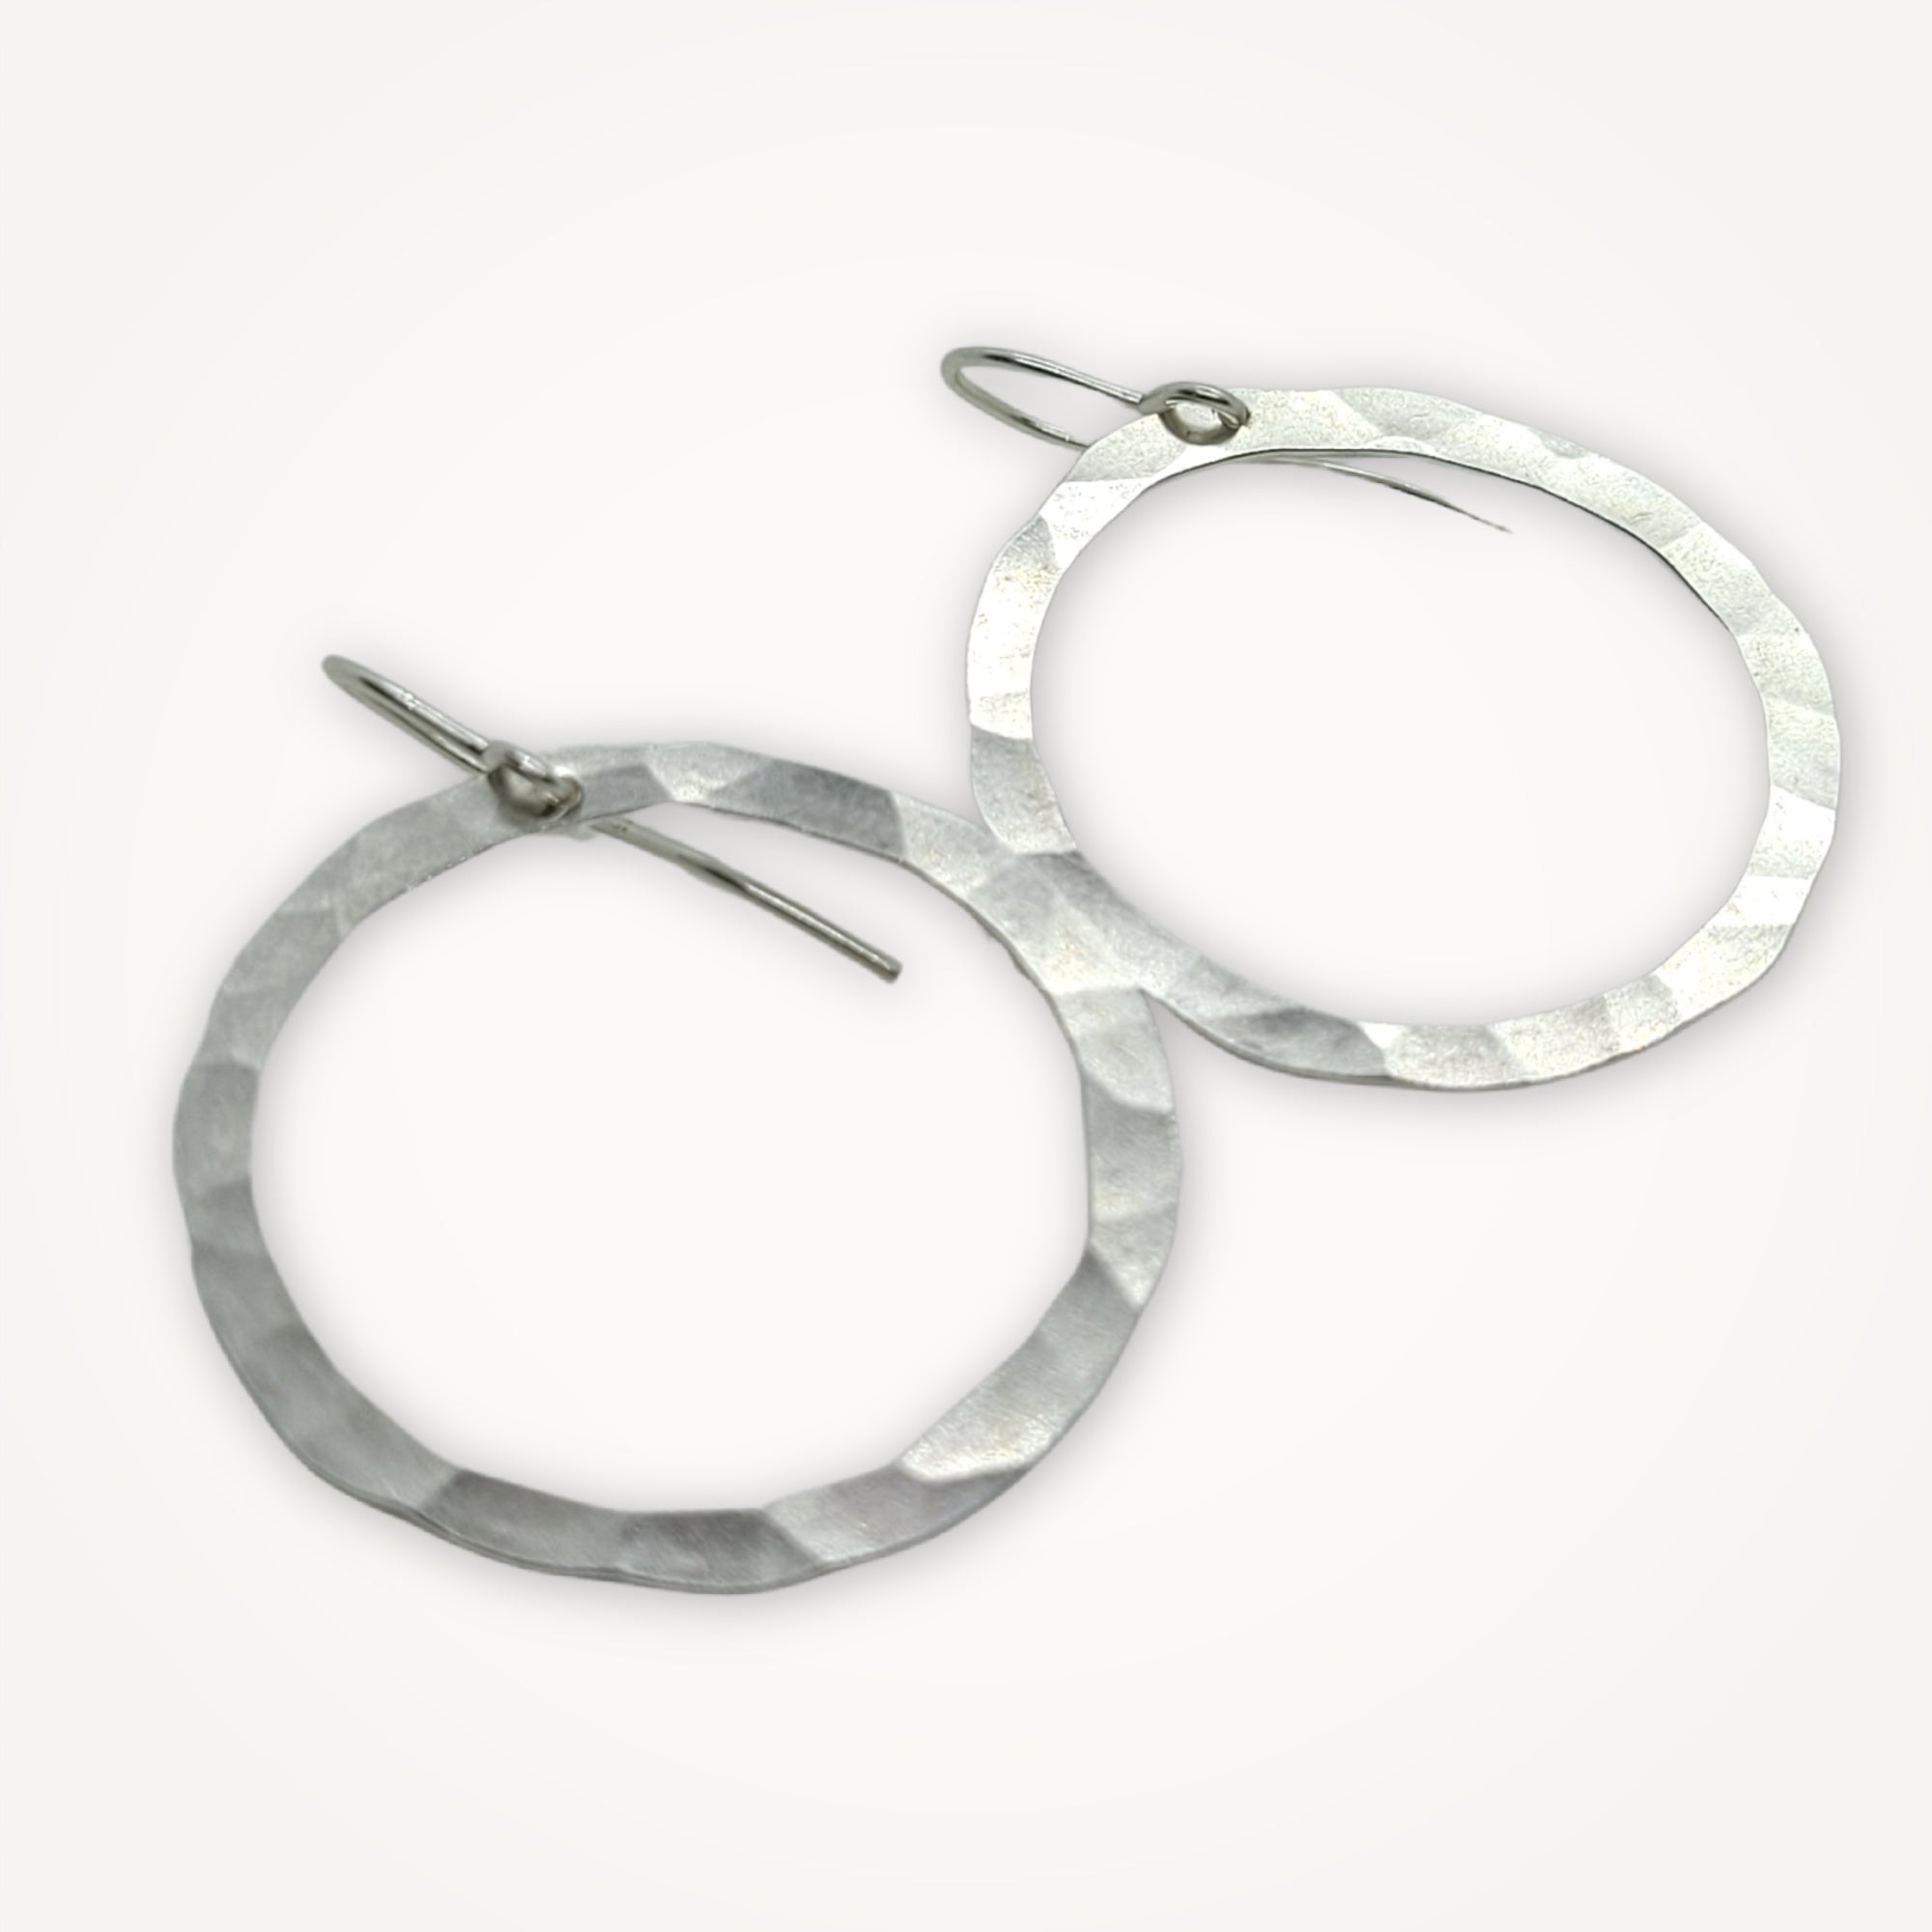 Organic Hoop Earrings • Medium